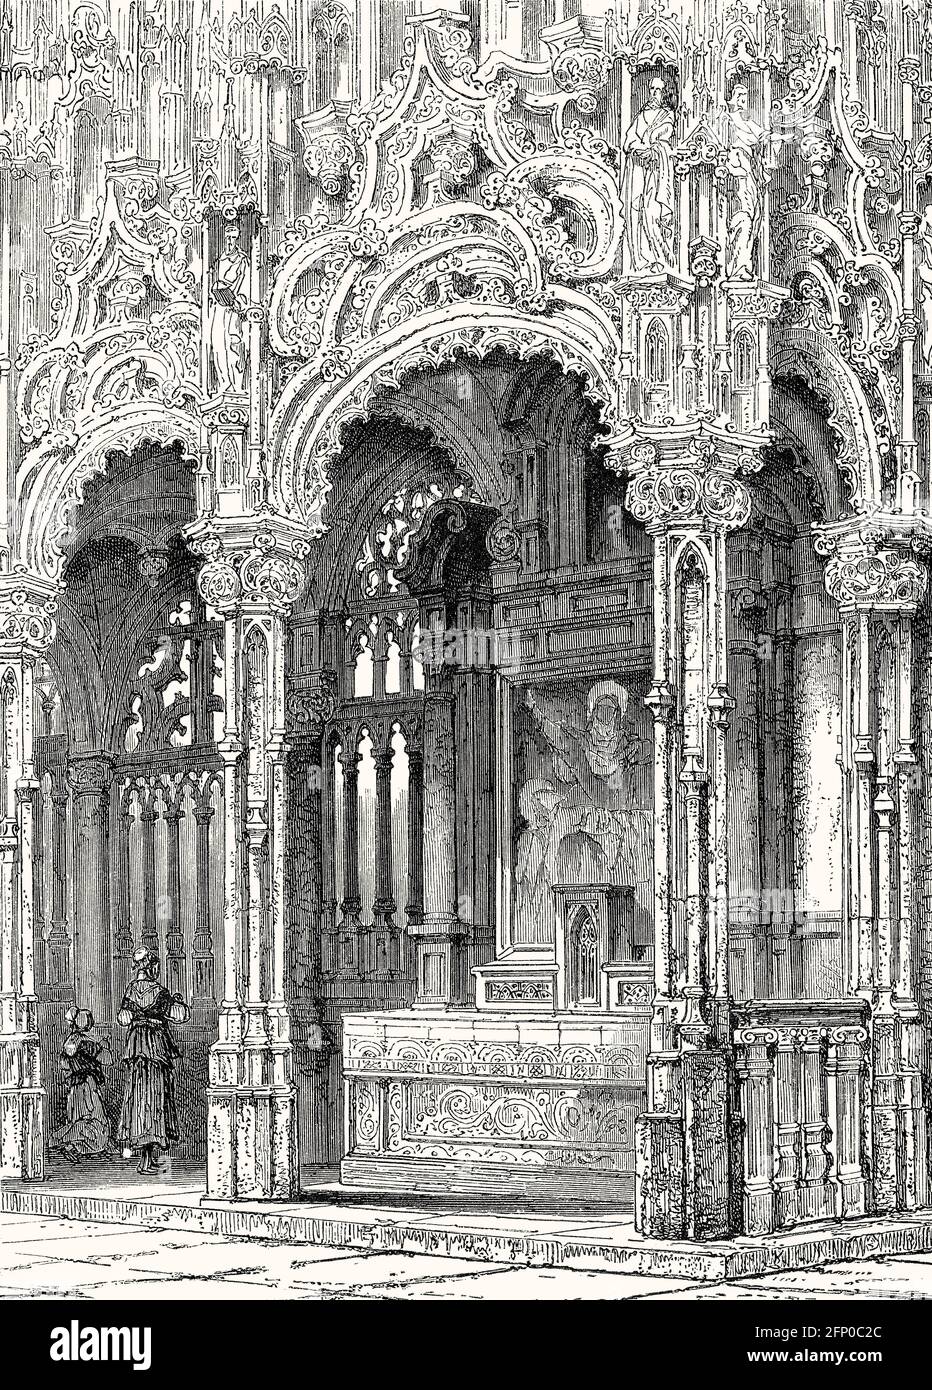 Il rood screen tardo gotico, 16 ° secolo da Stonemason J. Bertet, interni originali della Chiesa di San Nicola, Diksmuide, Fiandre Occidentali, 19 ° secolo Foto Stock